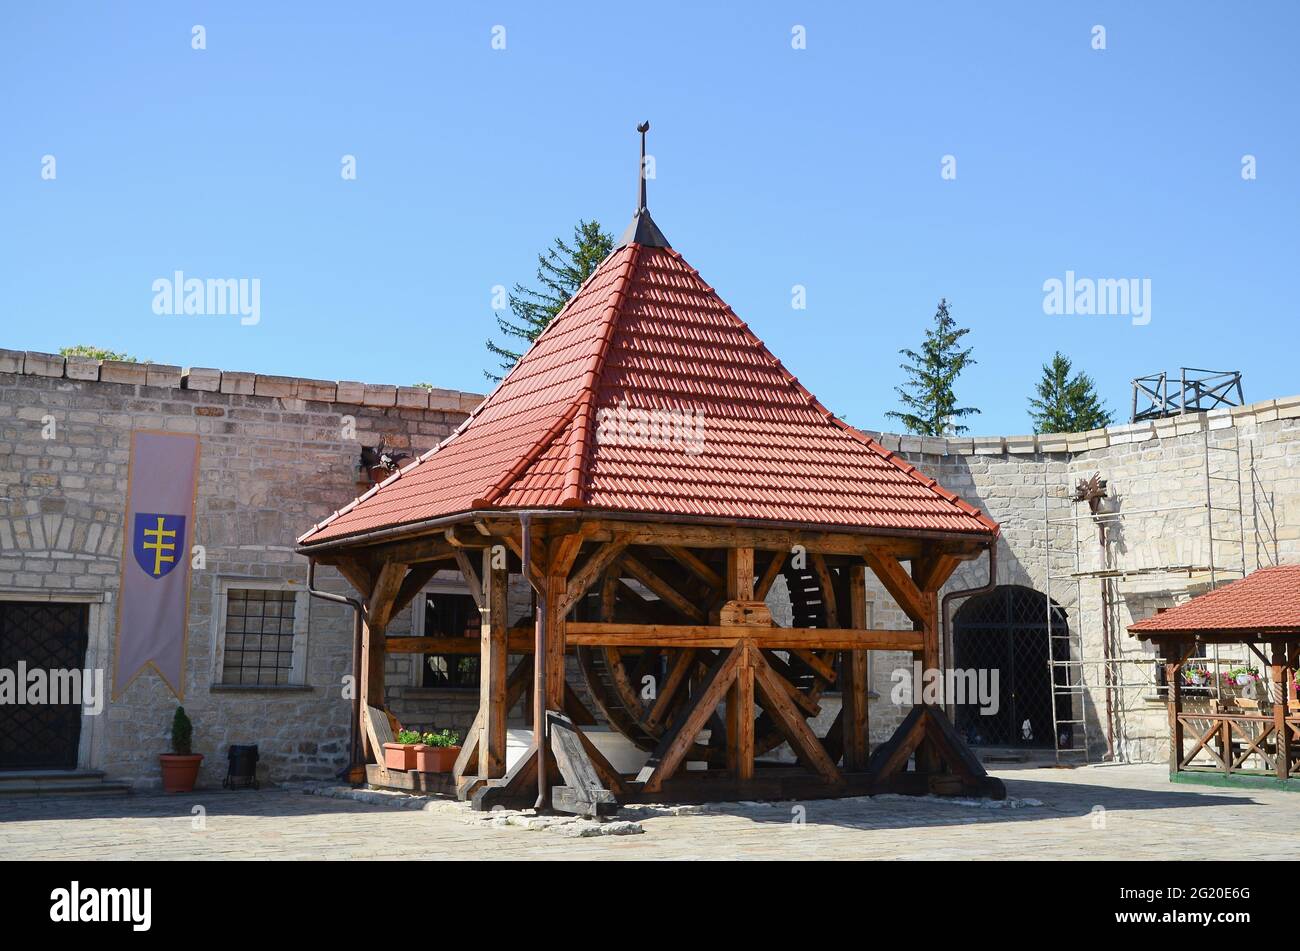 RÉGION DE TERNOPIL, UKRAINE - 27 MAI 2021 - dans les locaux du château de Zbarazh, région de Ternopil, Ukraine occidentale Banque D'Images